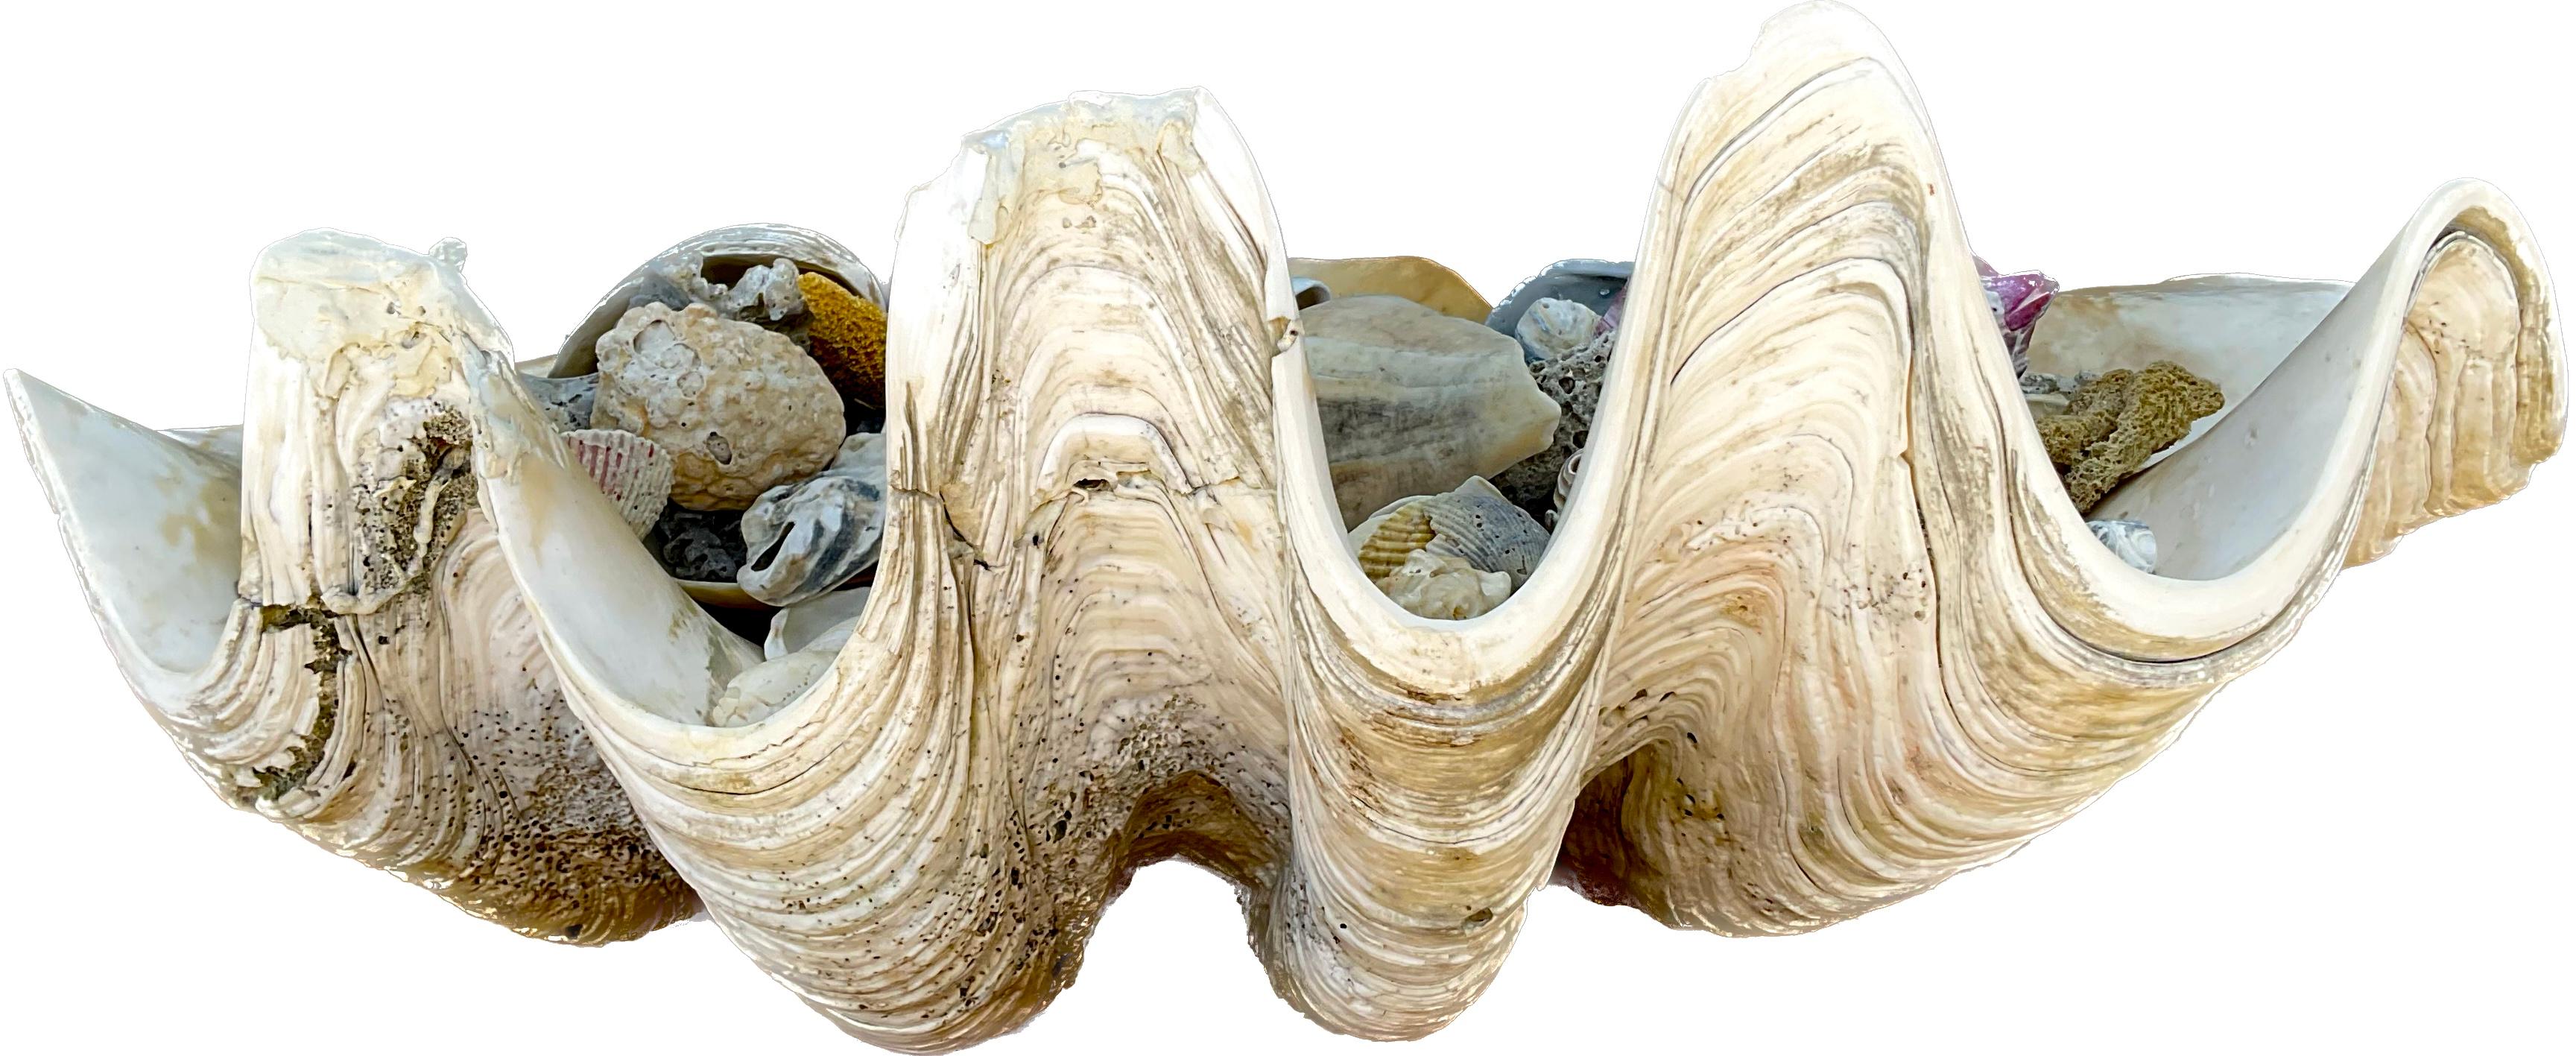 Authentische große Muschelschale mit ihrer ikonischen skulpturalen Form und den vom Meer inspirierten Farben und Texturen. Gefüllt mit einer Vielzahl von bunten Muscheln.  Maße: 23 